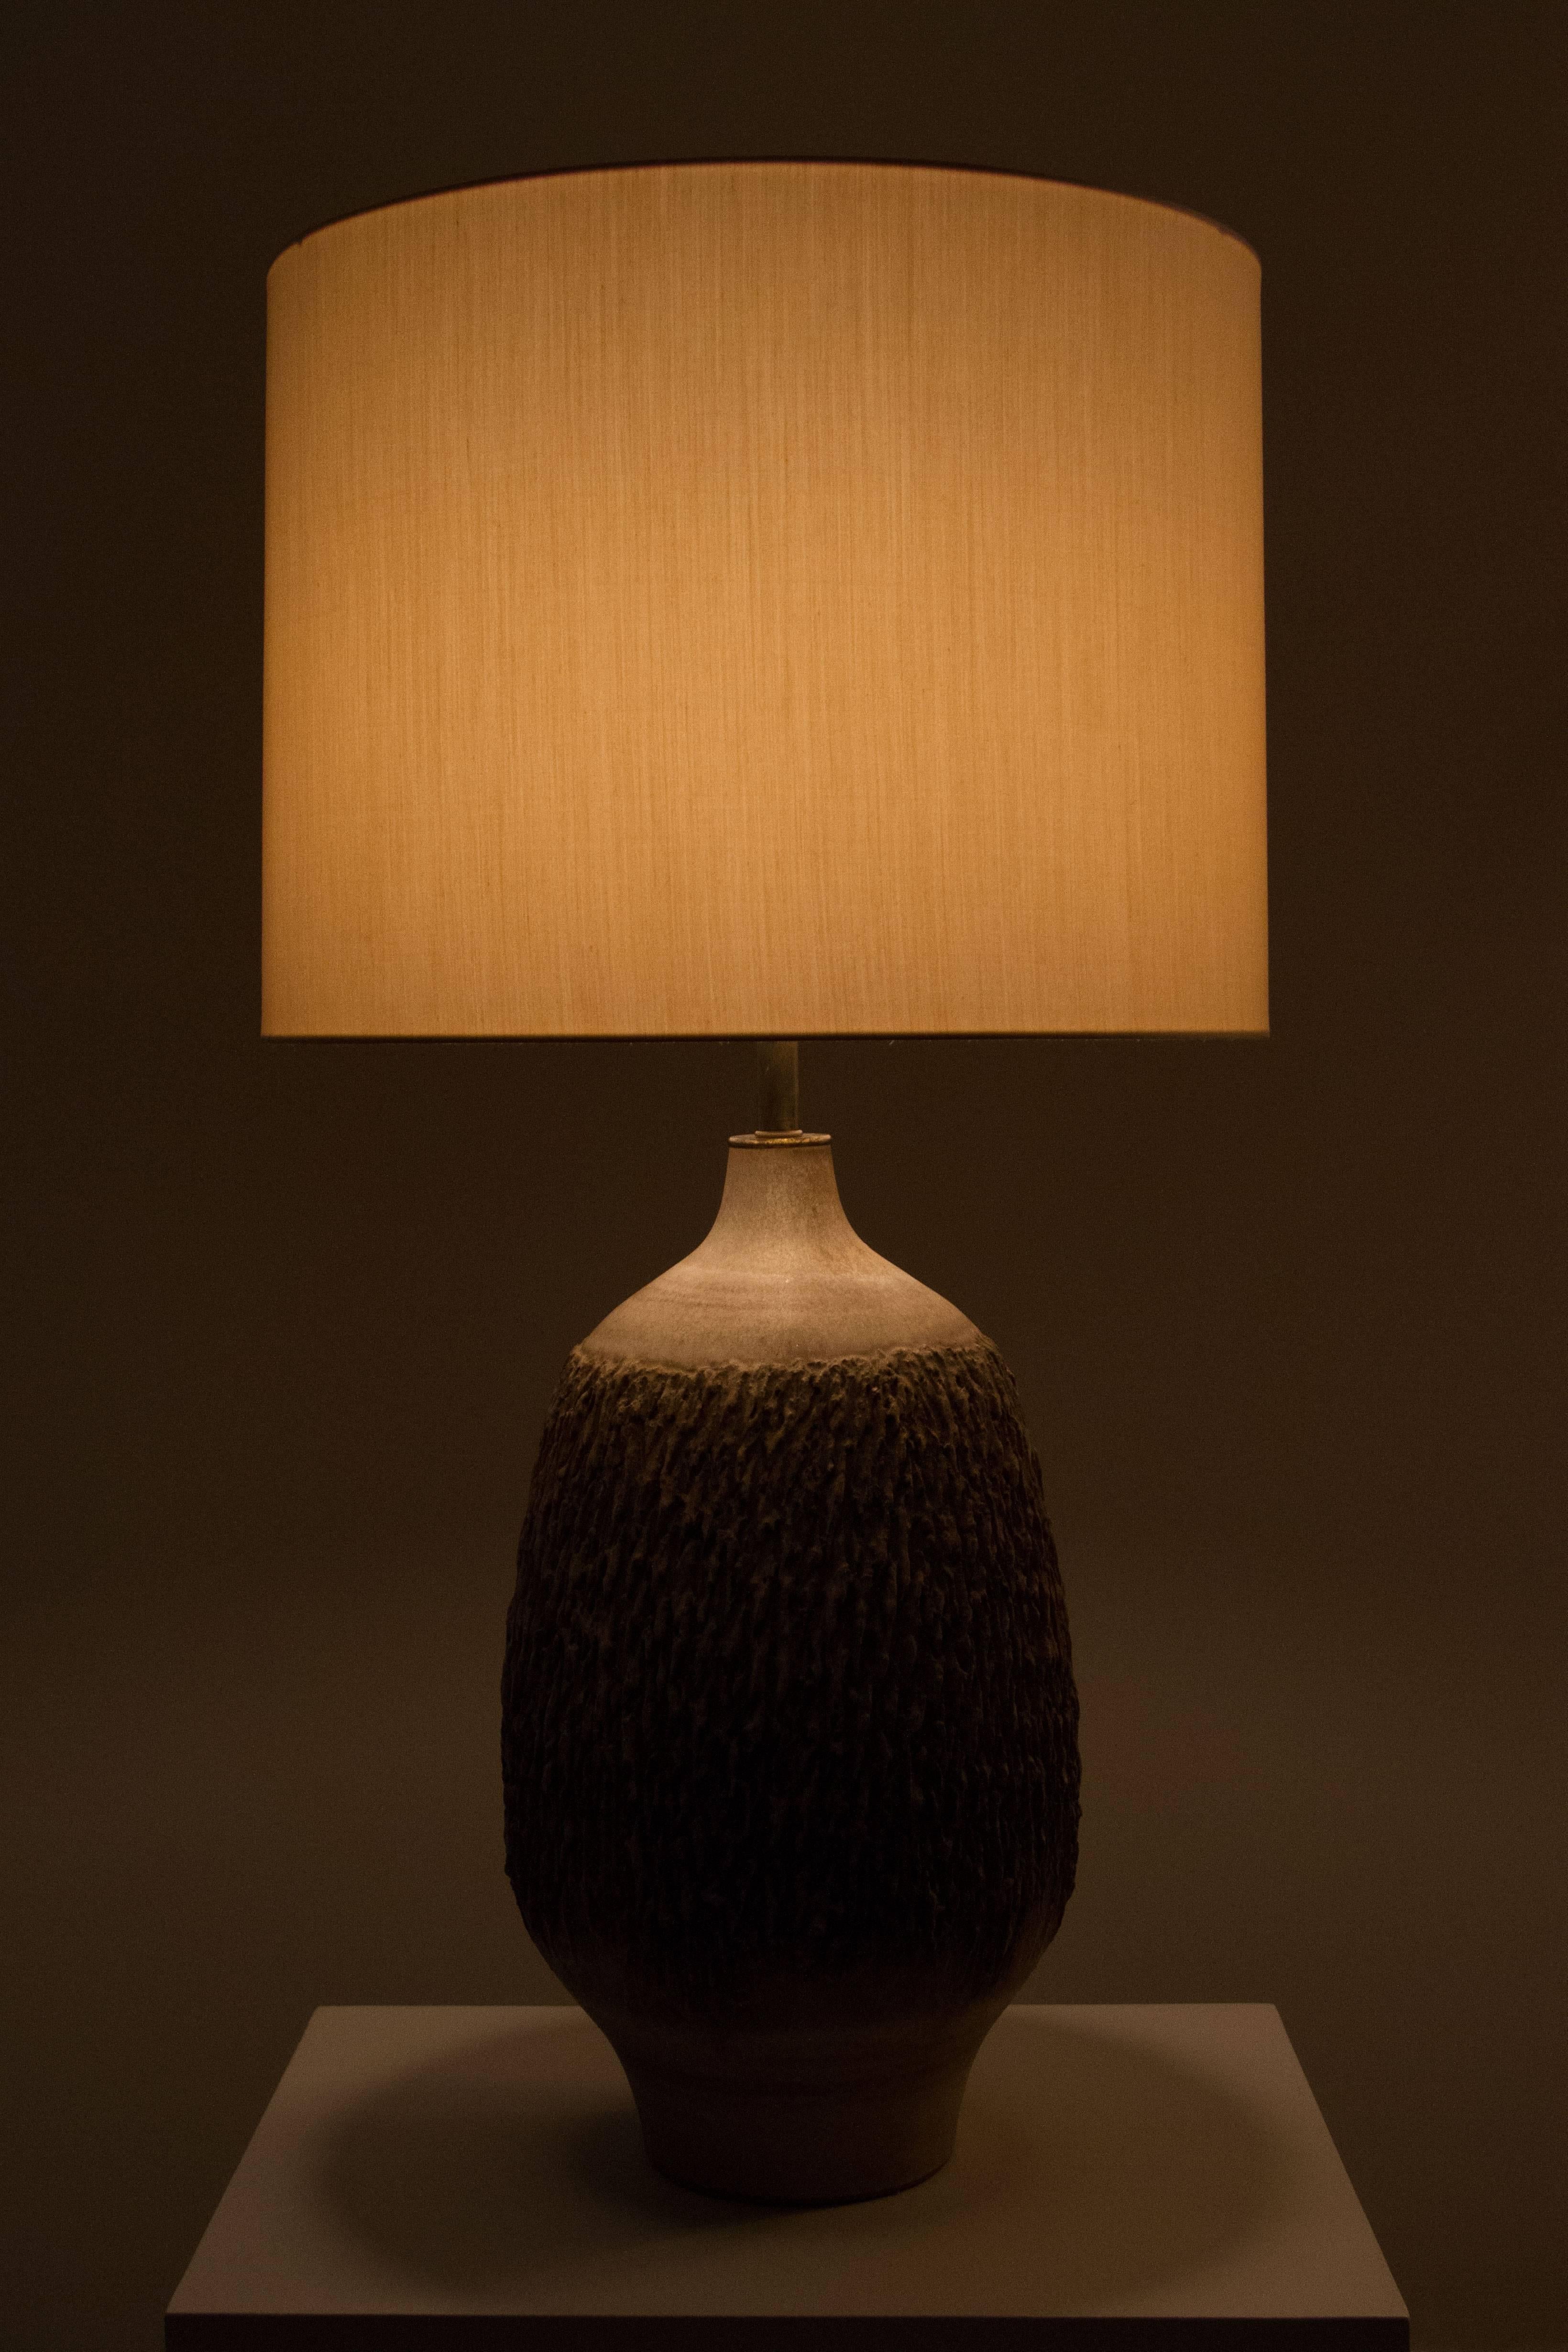 Ceramic studio table lamp, retains original stamp.